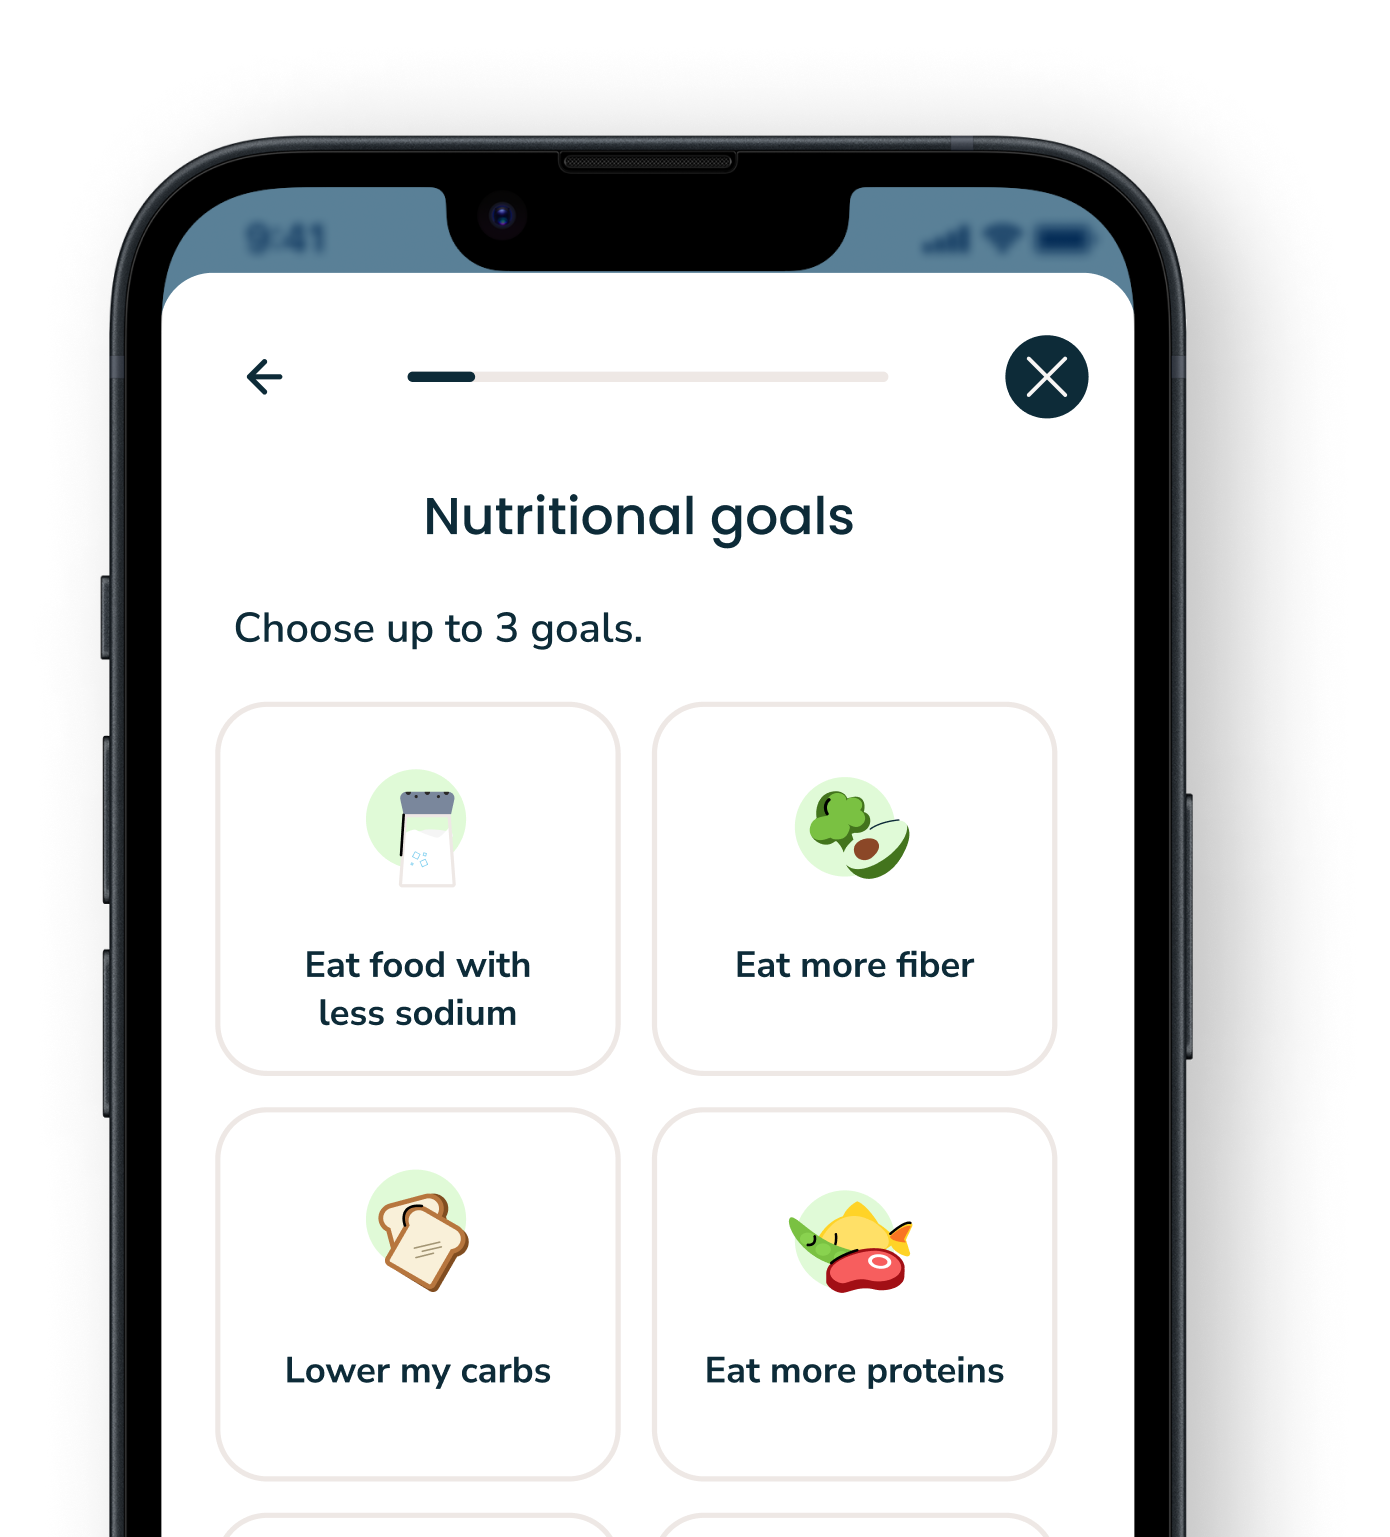 Nutritional goals screen